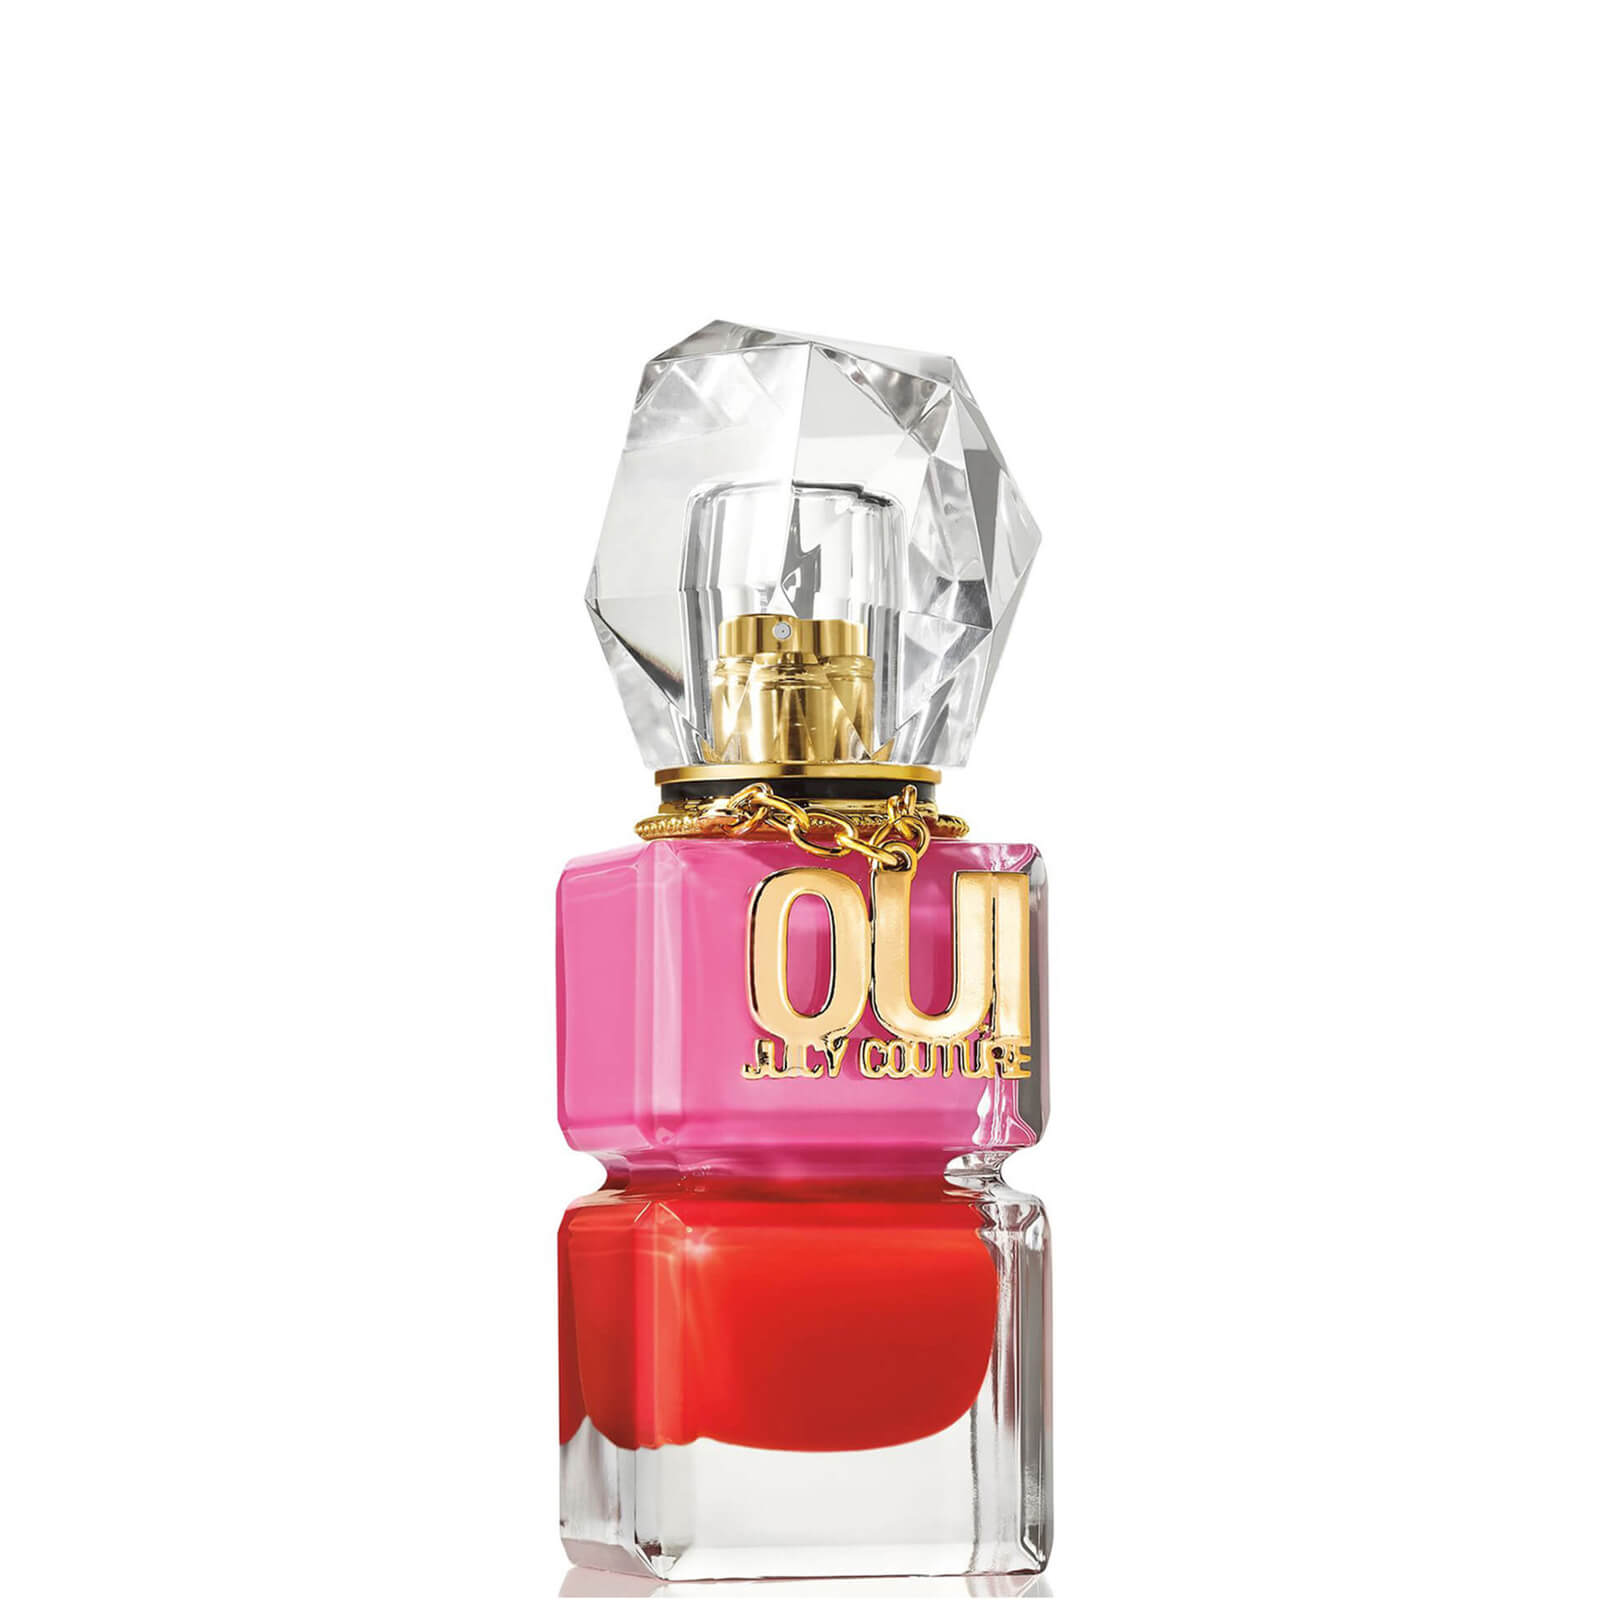 Photos - Women's Fragrance Juicy Couture Oui  Eau de Parfum - 50ml A0115018 